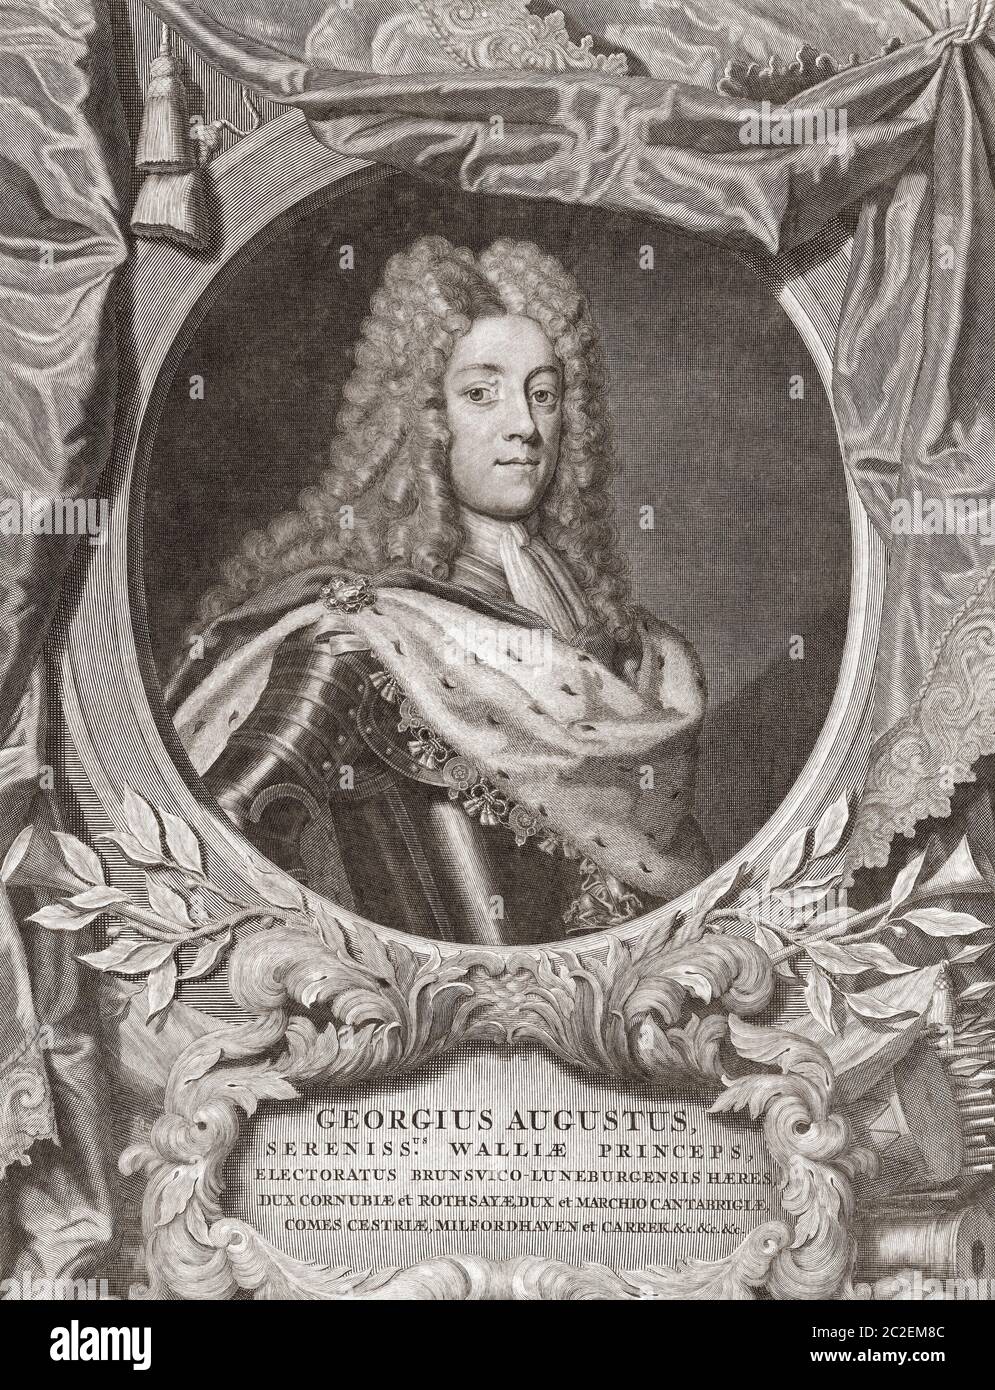 König Georg II. Von England, 1683 - 1760. Hier gesehen, als er Prinz von Wales war. Nach einem Stich von Pieter van Gunst aus dem frühen 18. Jahrhundert nach einem Werk von Georg Wilhelm Lafontaine. Stockfoto